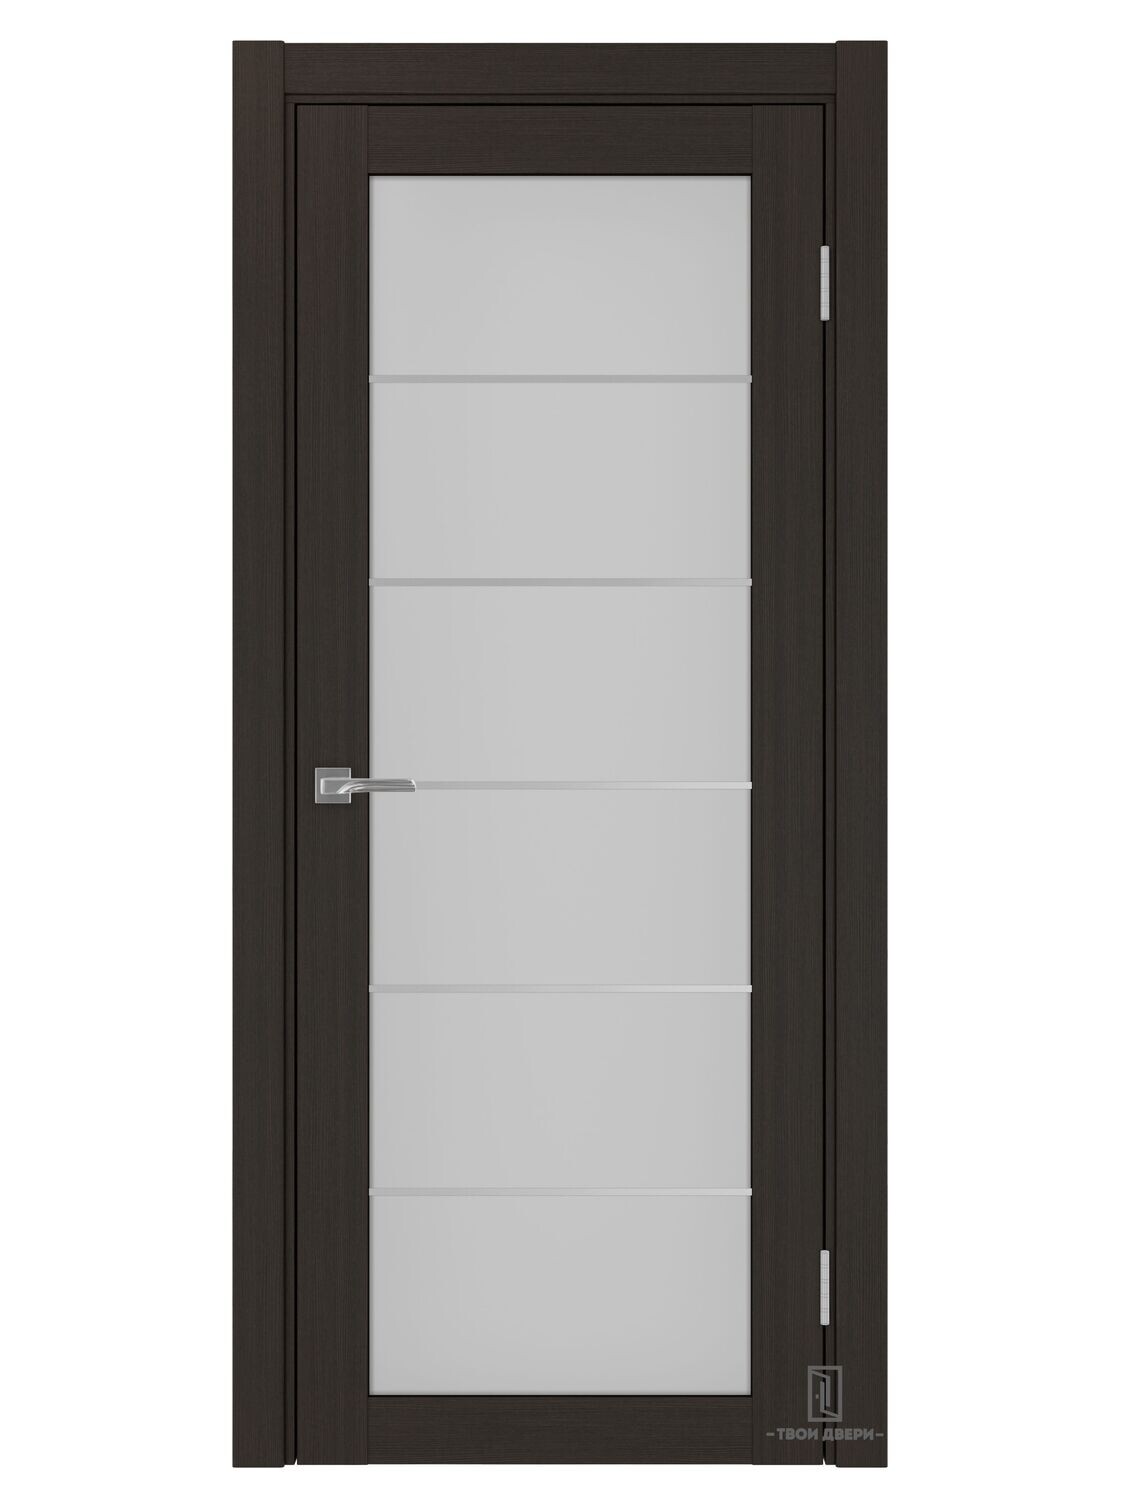 Дверь межкомнатная АСС 501.2 (молдинги), венге